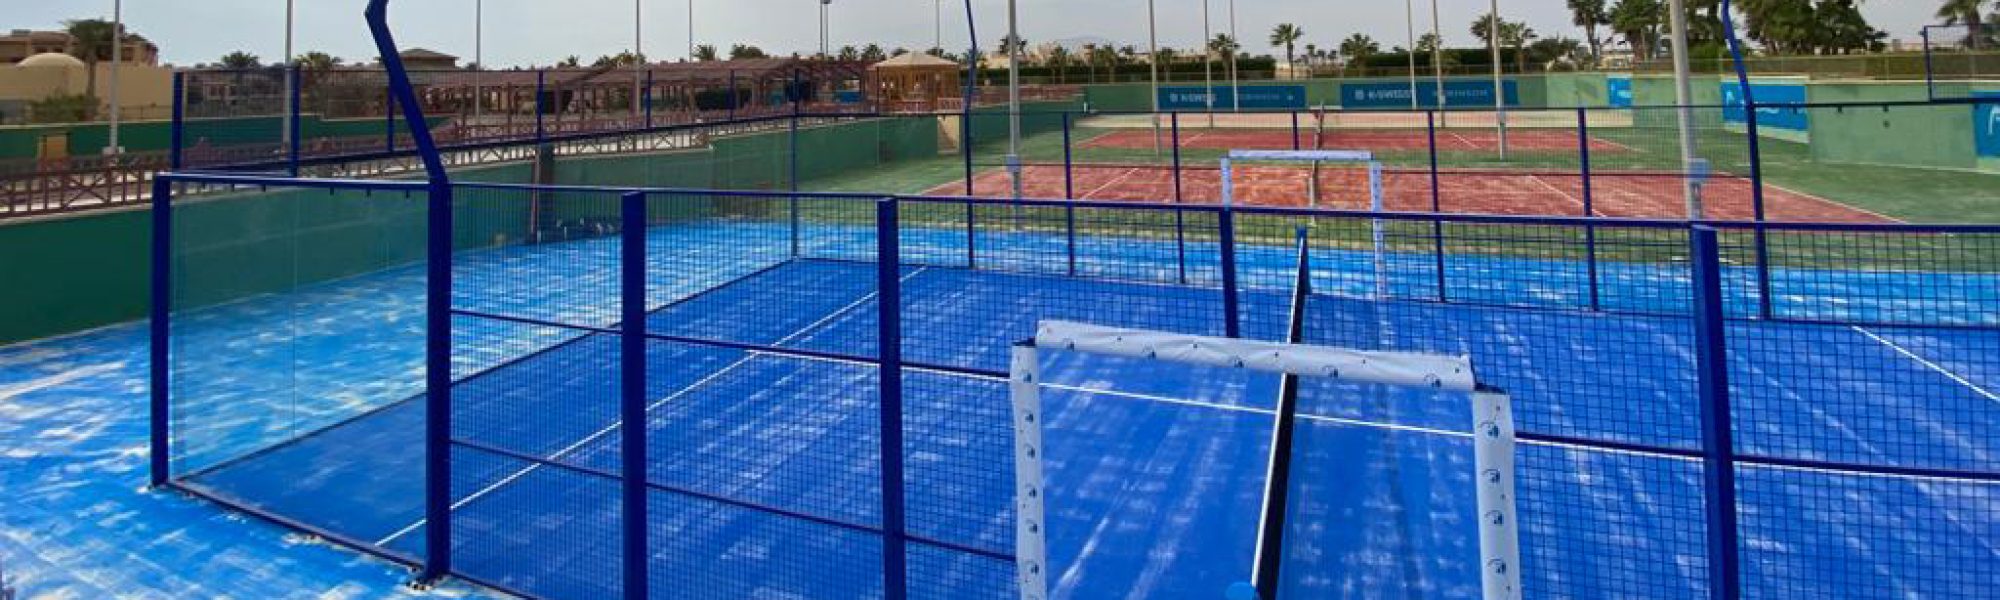 Mido Trading ha instalado en Egipto, en el espectacular complejo hotelero Robinson Soma Bay, una pista de pádel equipada con el sistema Supercourt XN y dos de tenis con césped NSF 70. La afición por el pádel en Egipto crece sin parar.